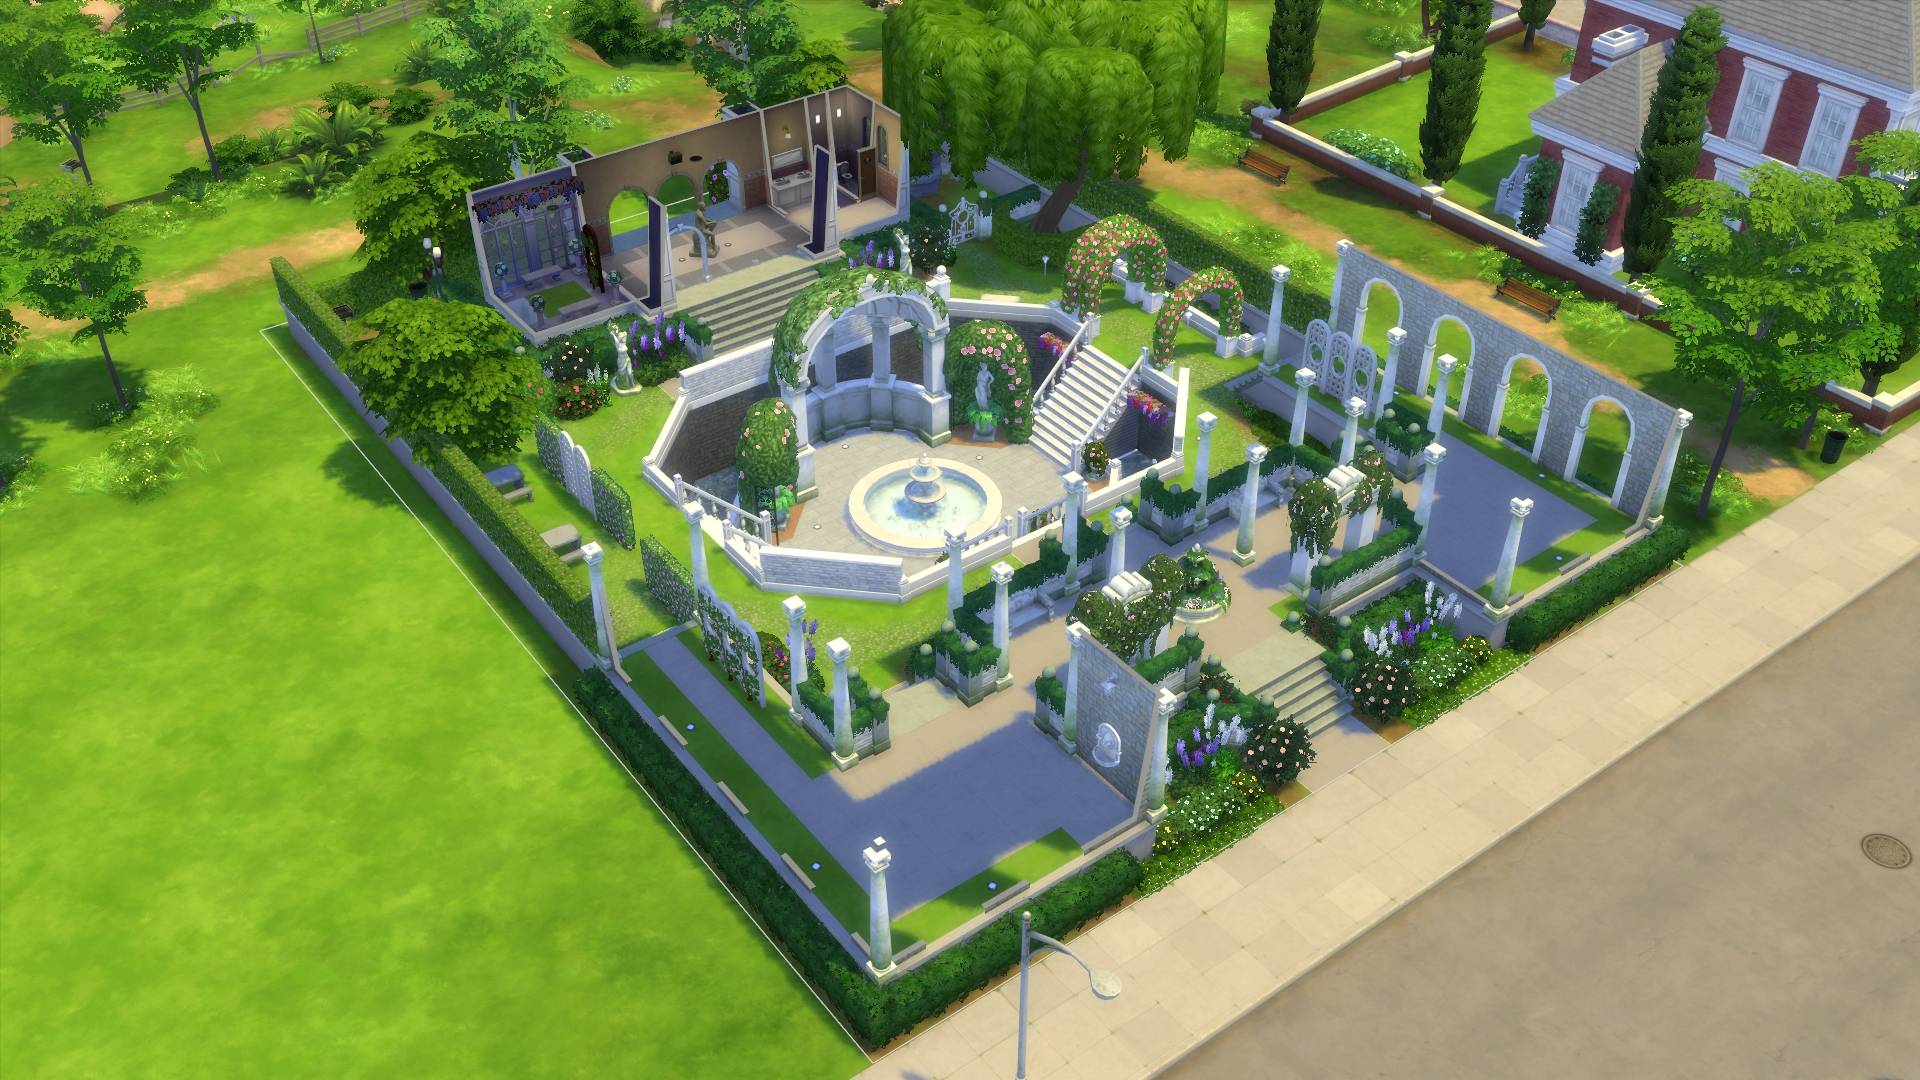 Sims Garden Center